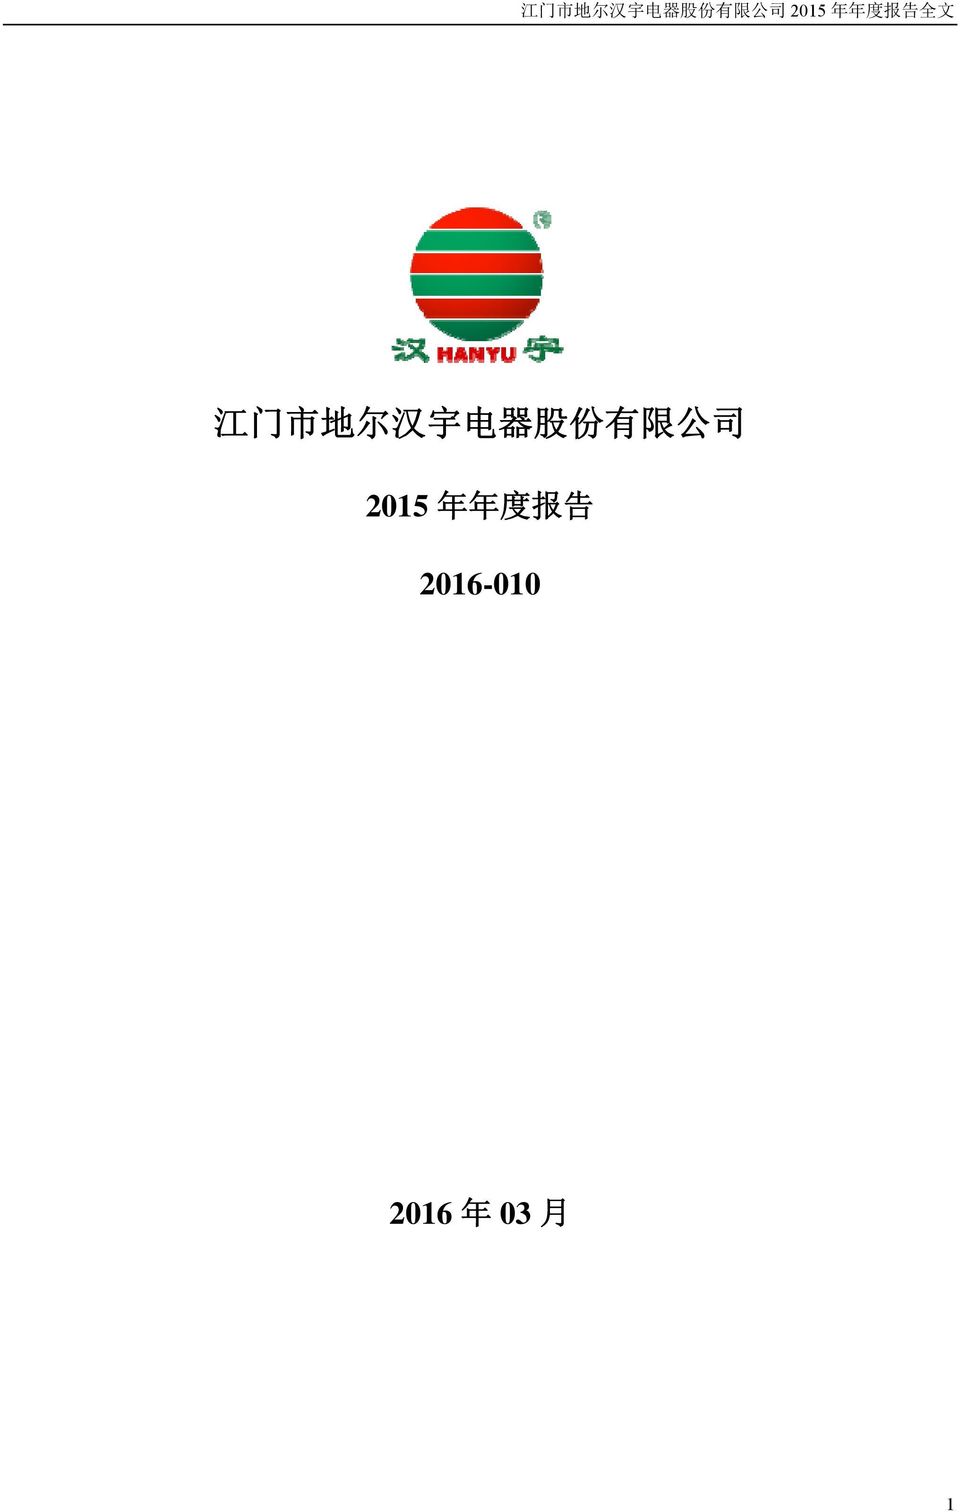 2015 年 年 度 报 告